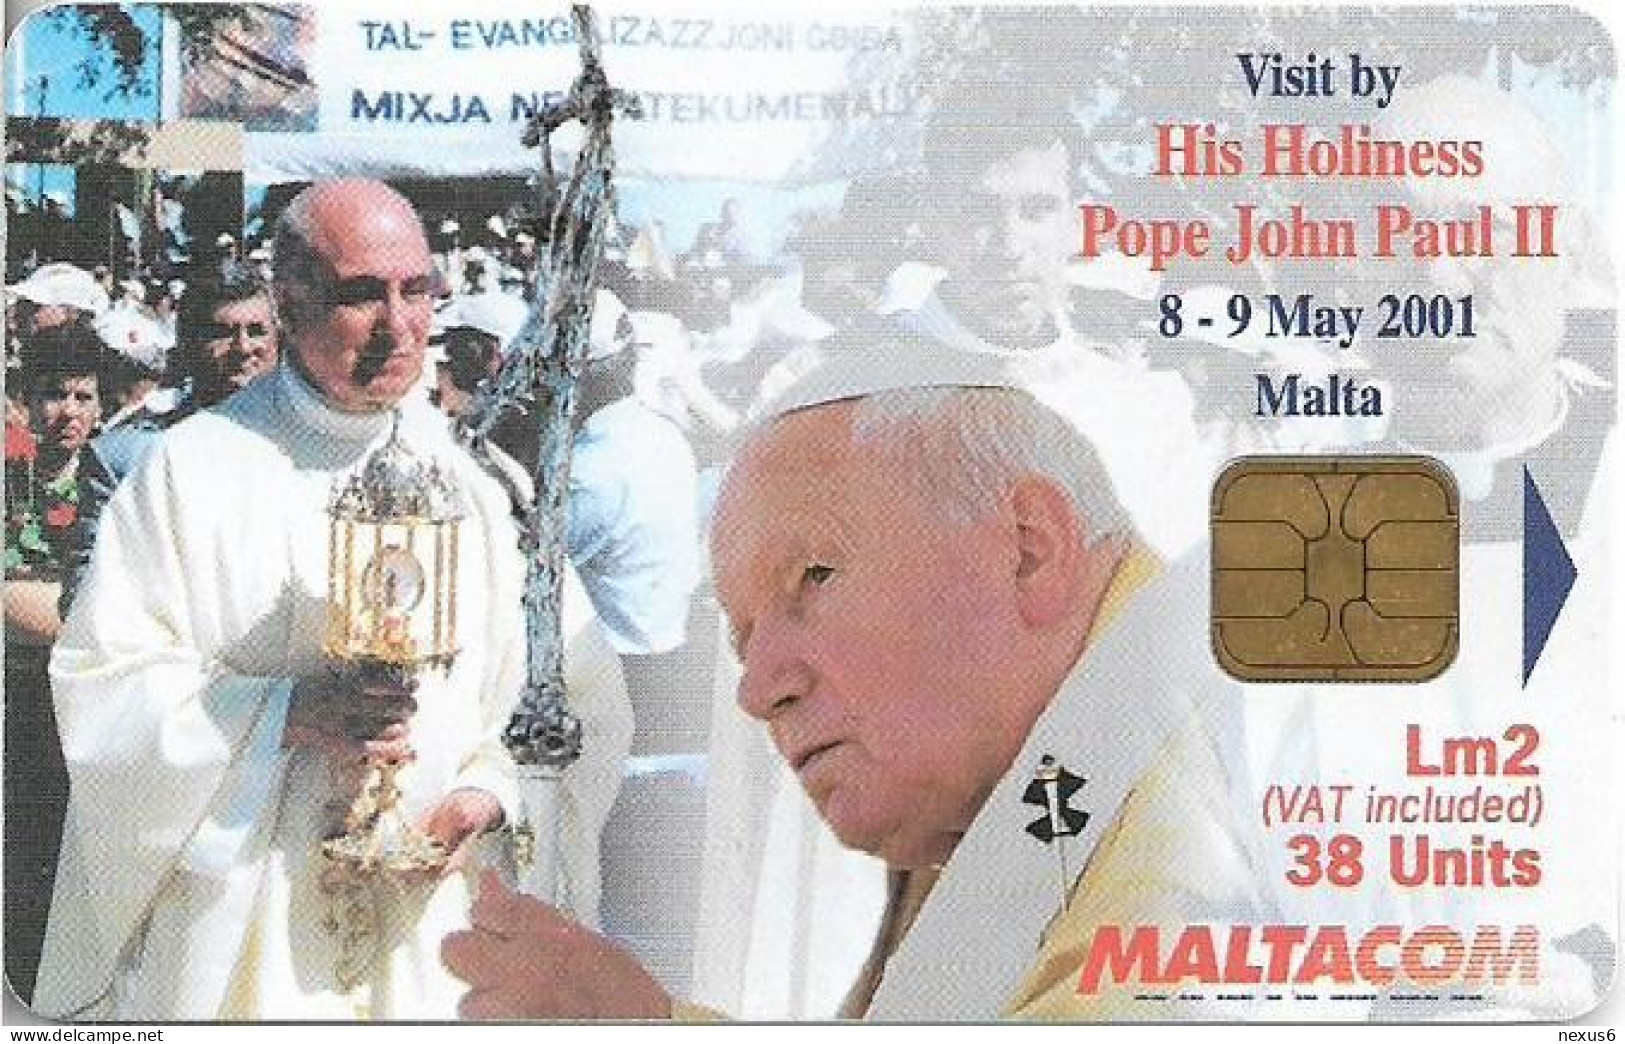 Malta - Maltacom - Pope's Visit 4 - 11.2001, 38U, 25.000ex, Used - Malta